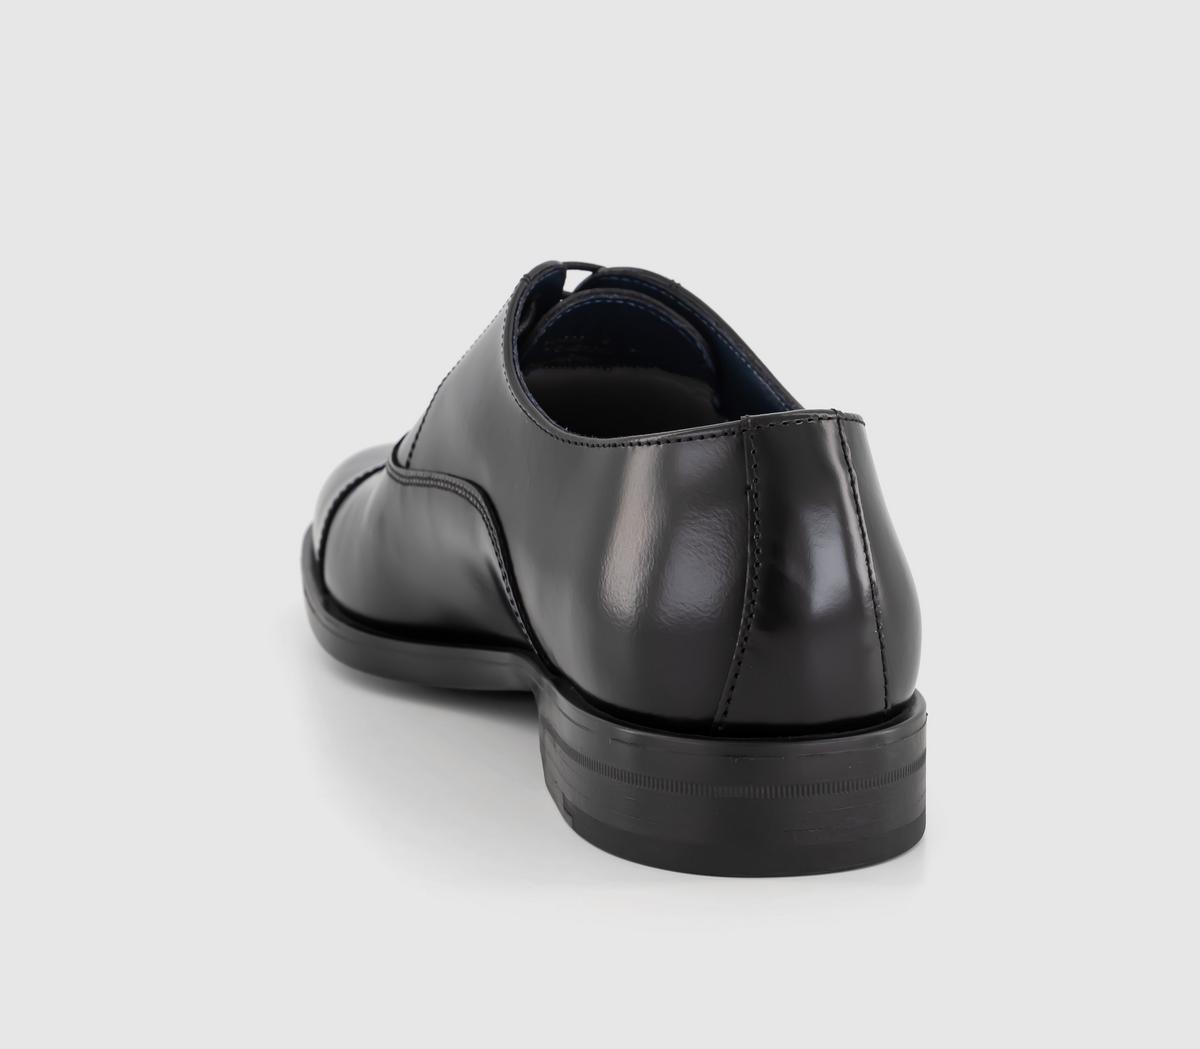 Poste Paddington Oxford Toecap Shoes Black Leather - Men’s Smart Shoes